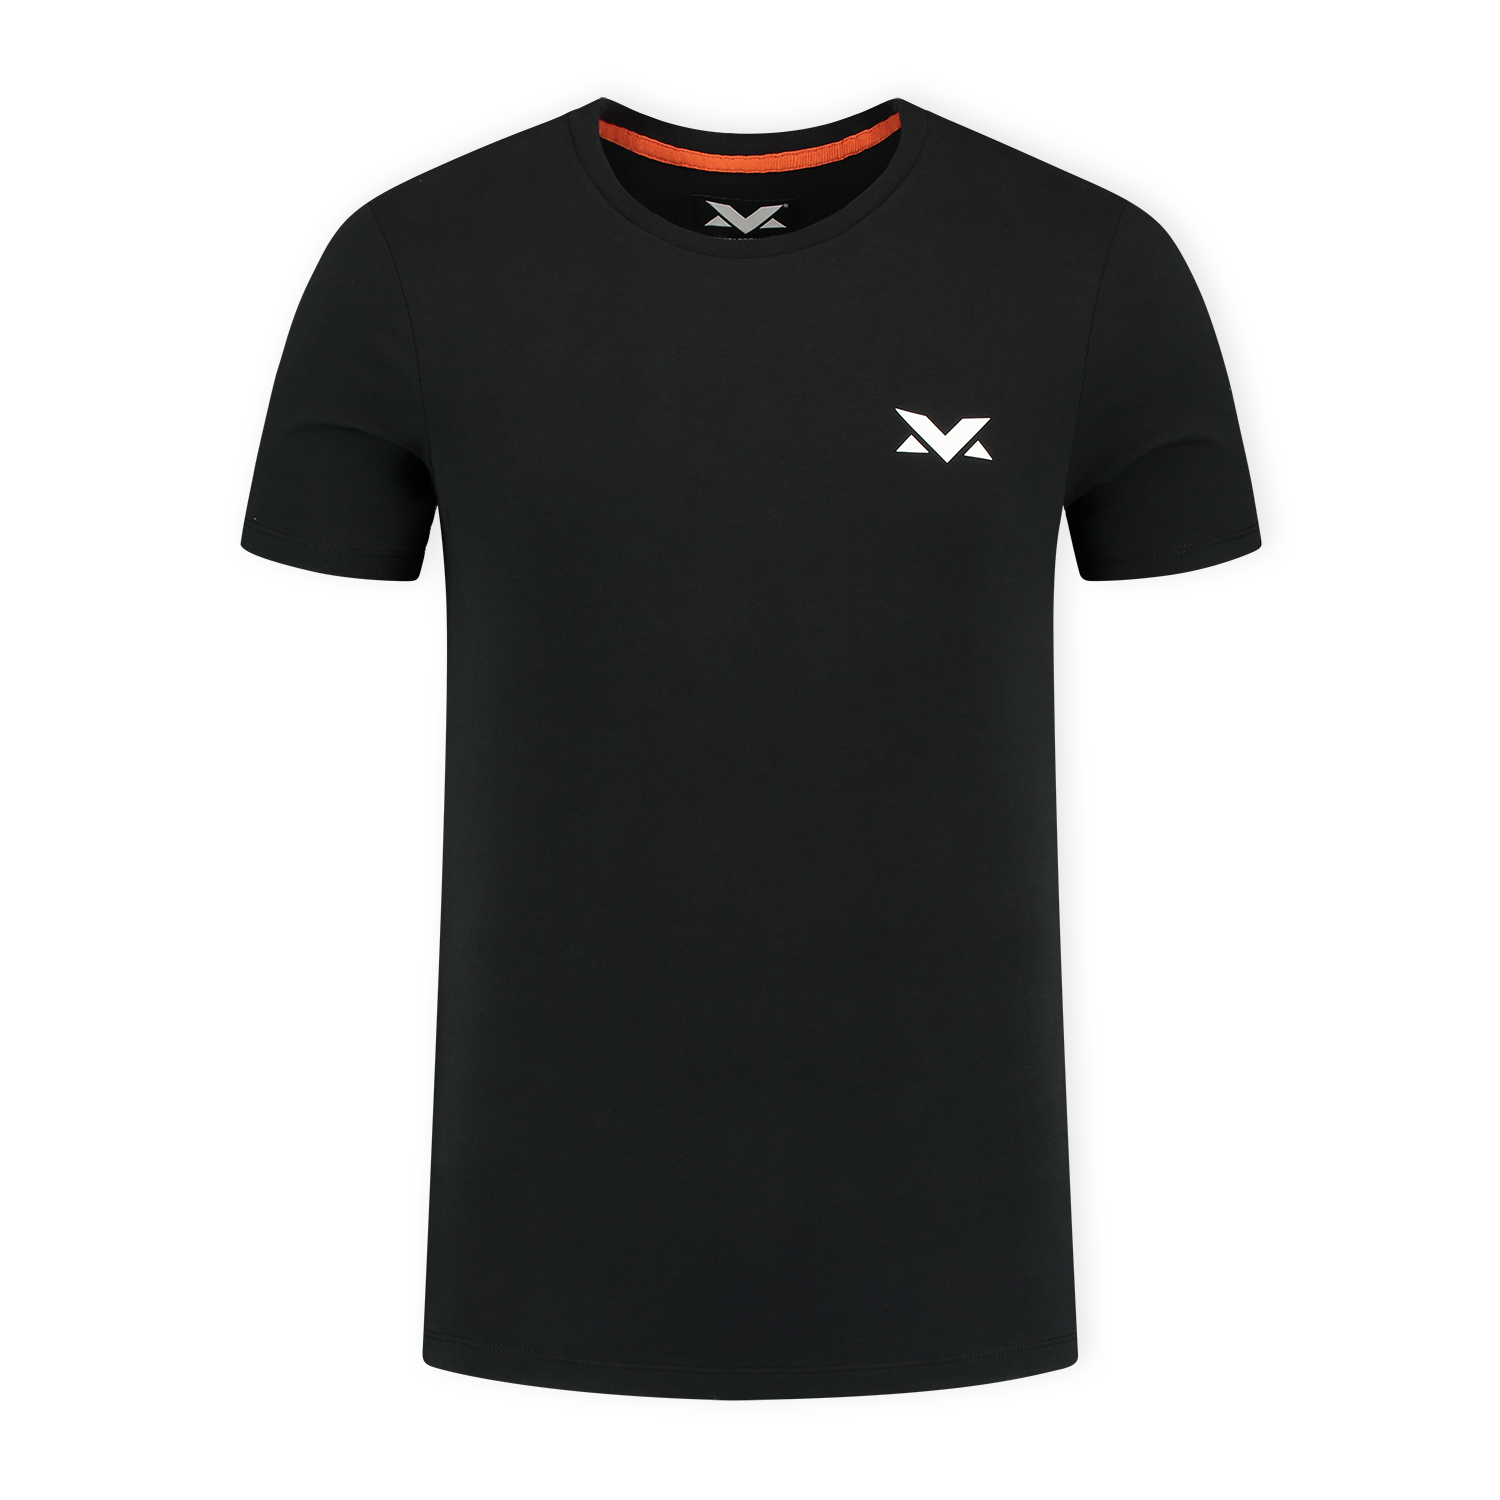 MV T-shirt The Limits - Zwart - S - Max Verstappen